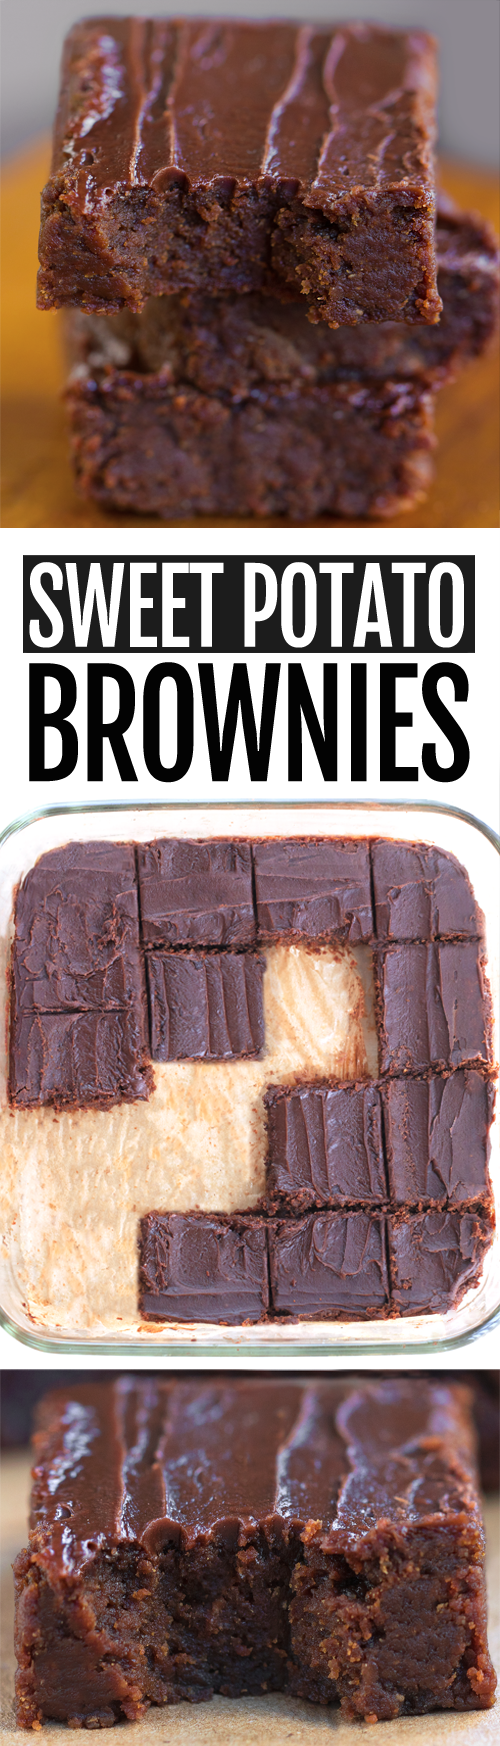 Receta secreta de brownies saludables de camote